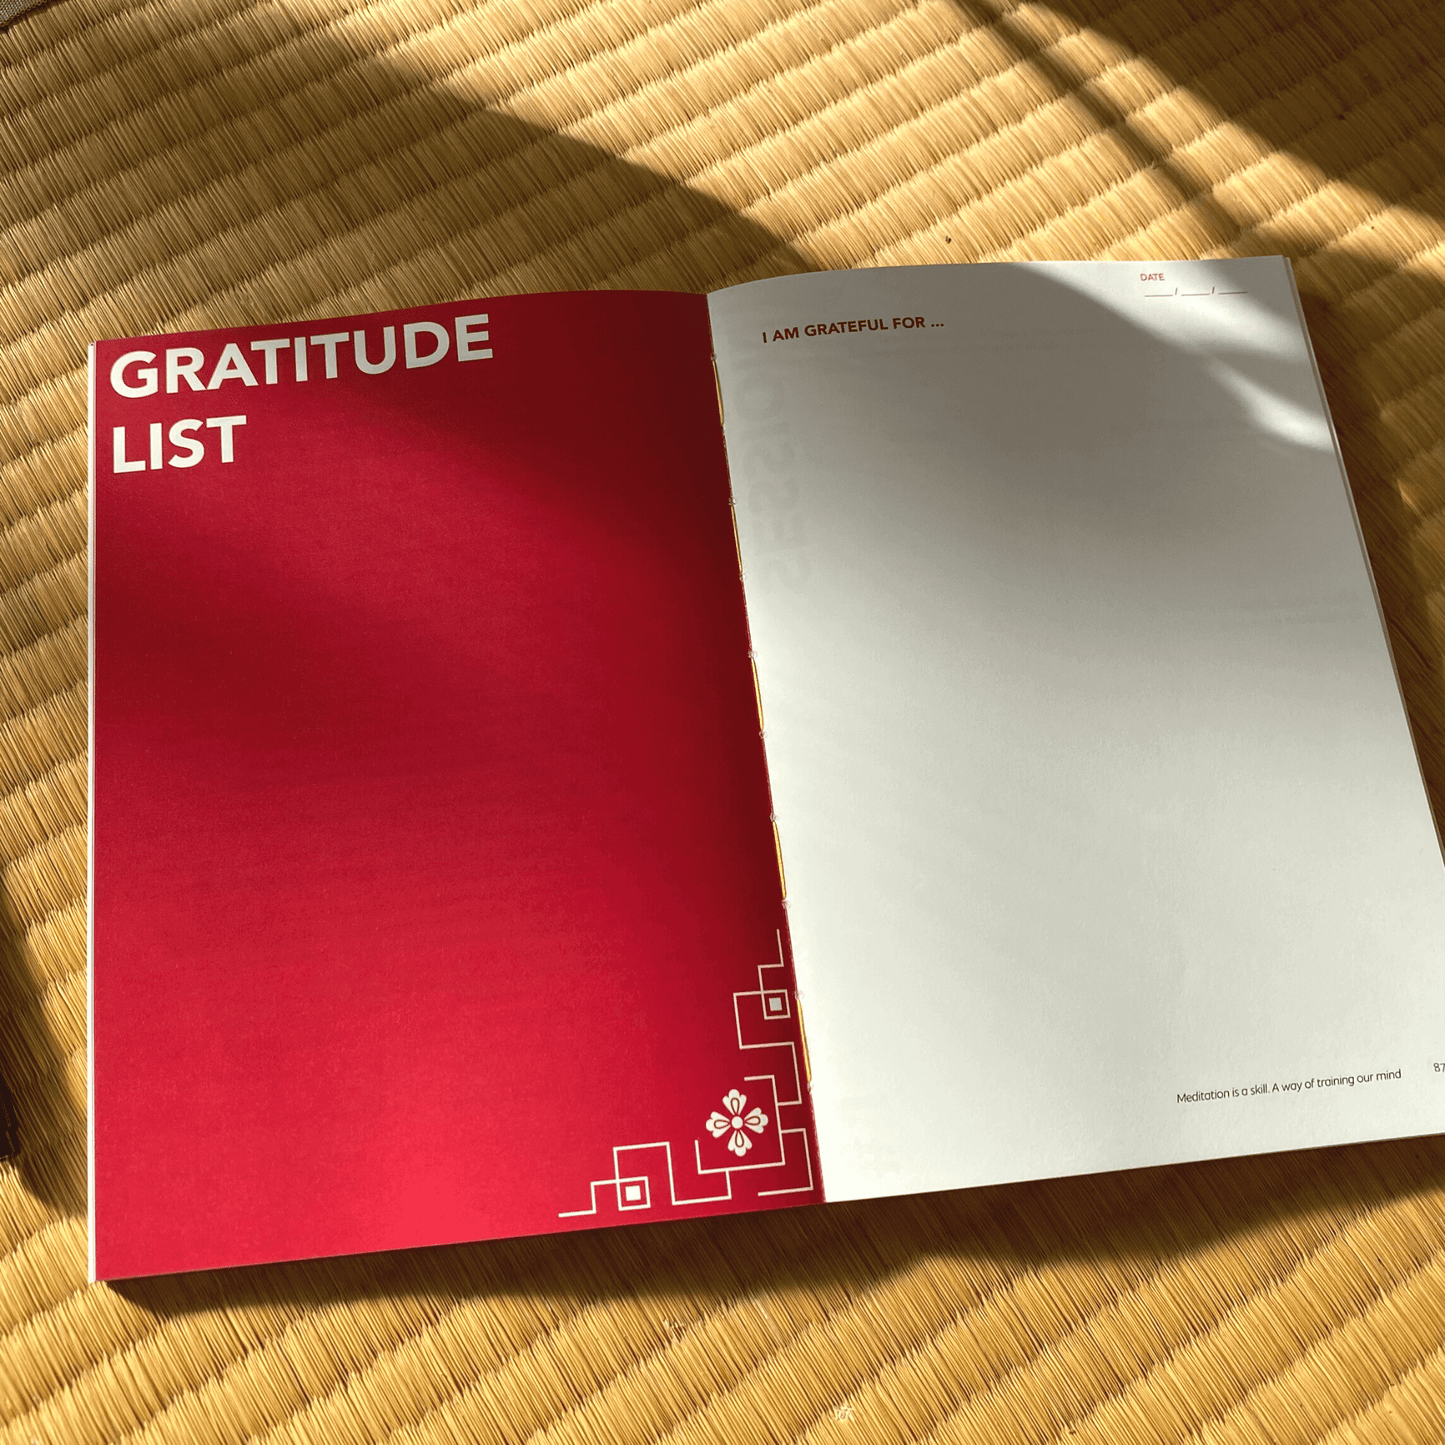 Gratitude list in My Meditation Marathon mindfulness journal.